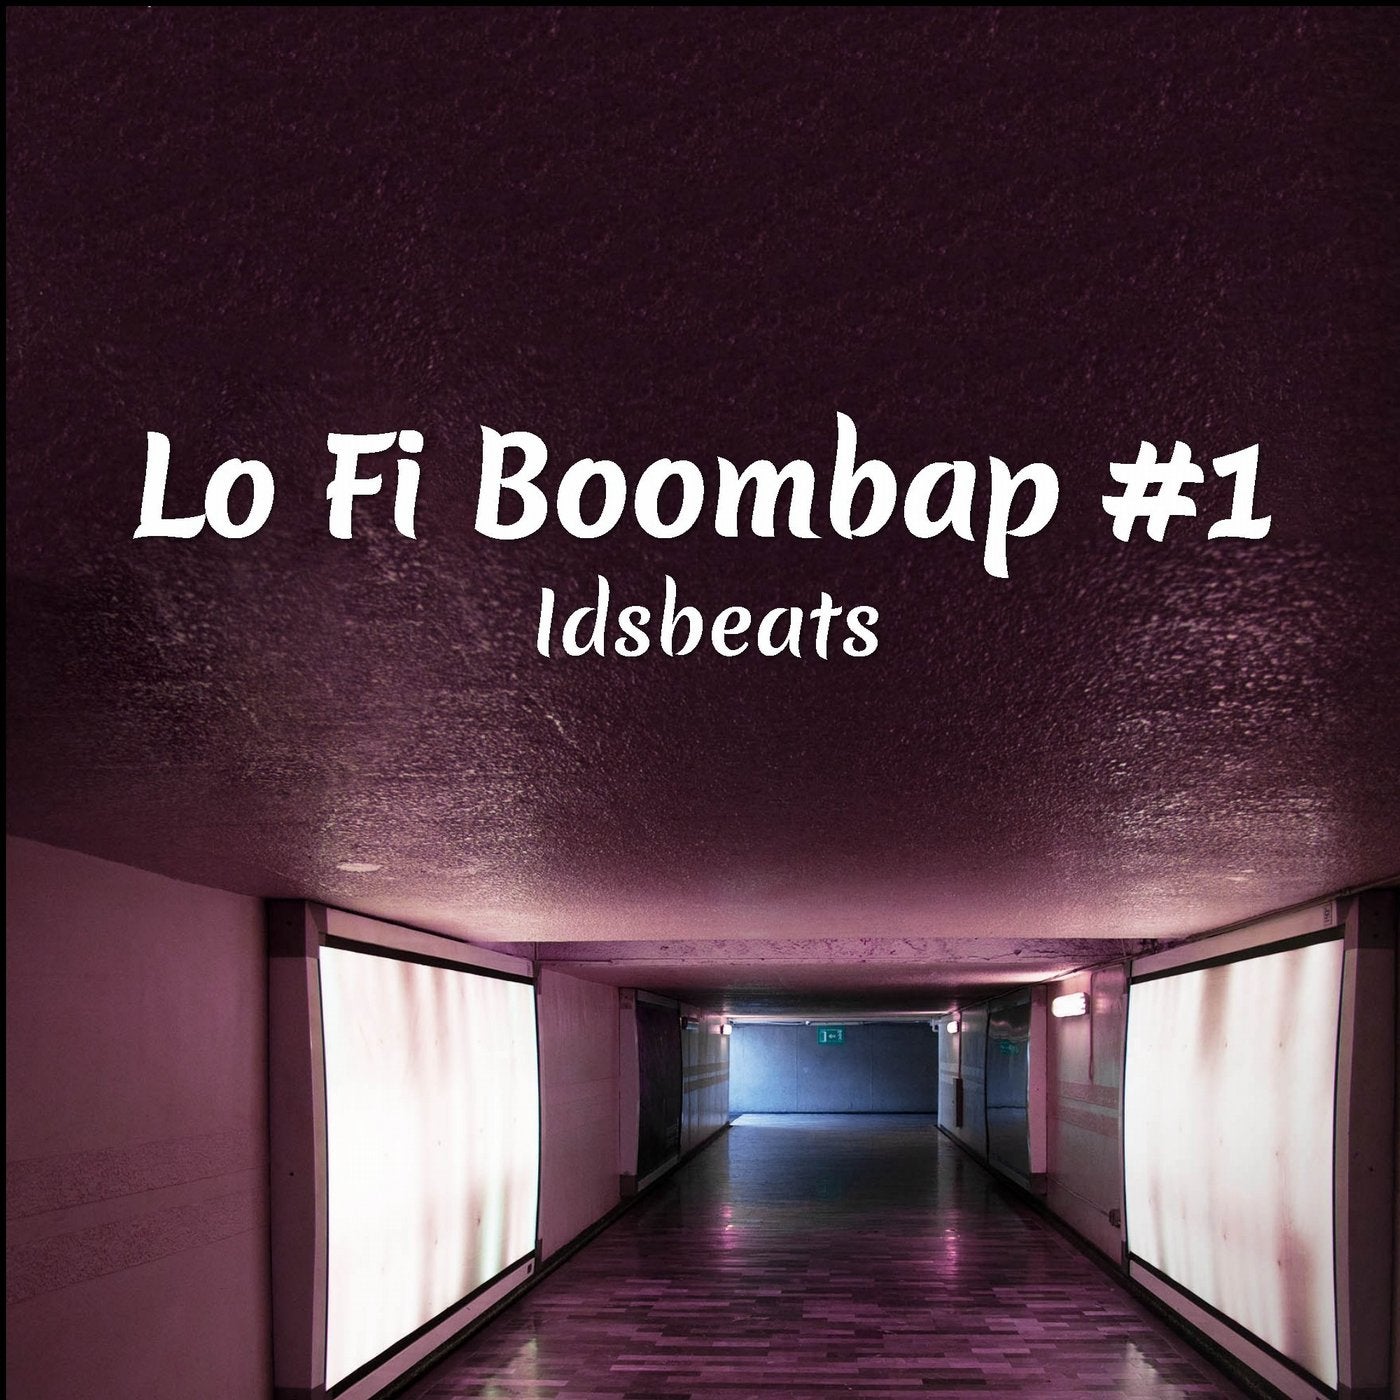 Lo Fi Boombap #1